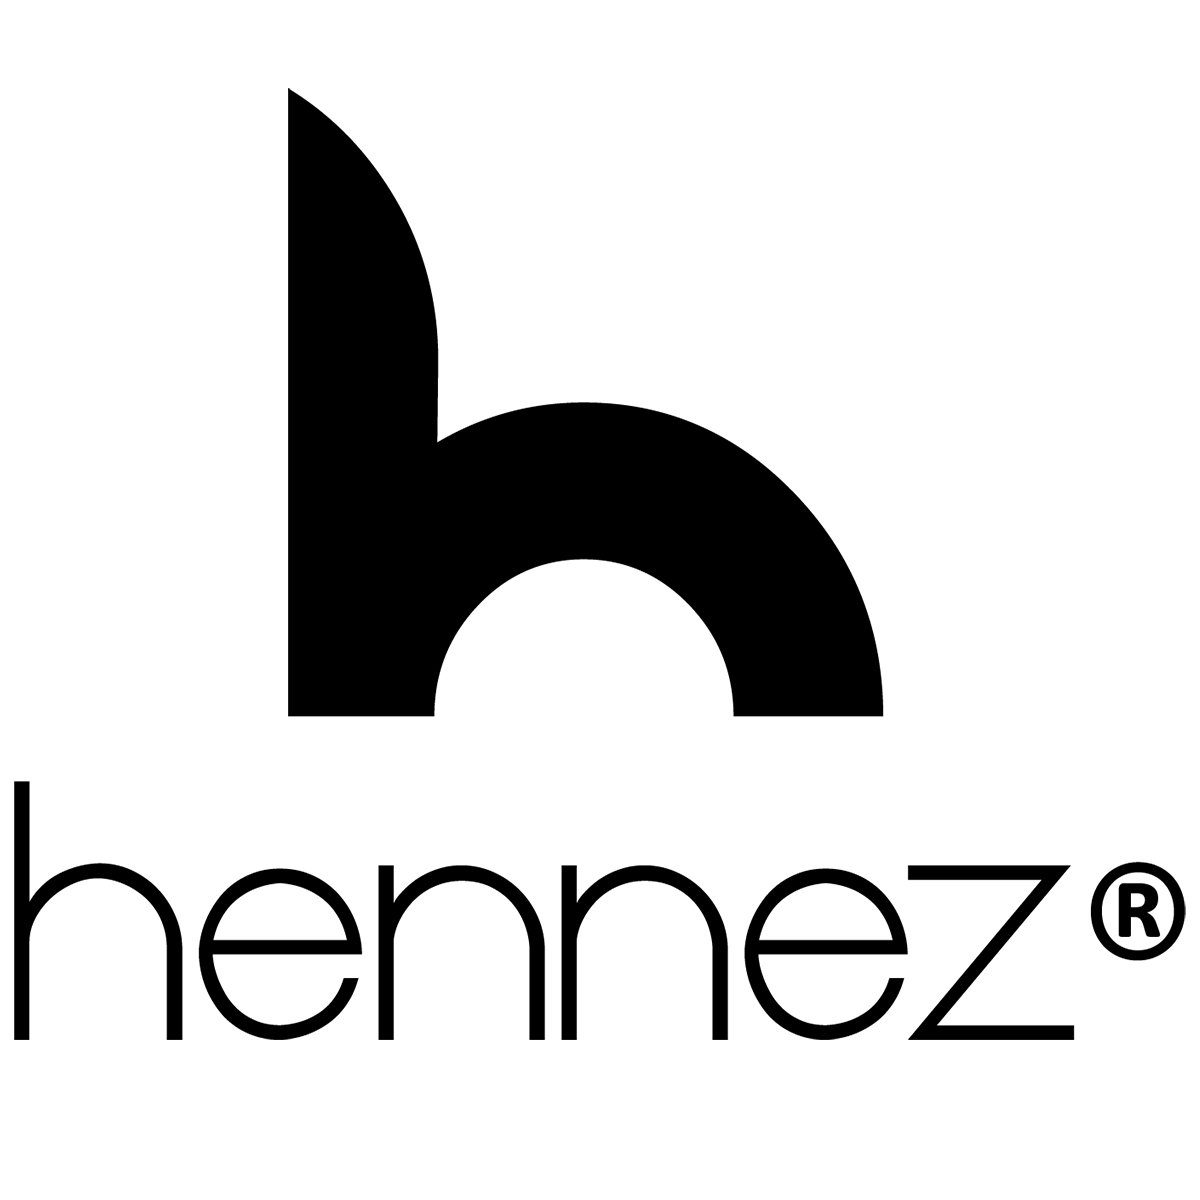 HENNEZ